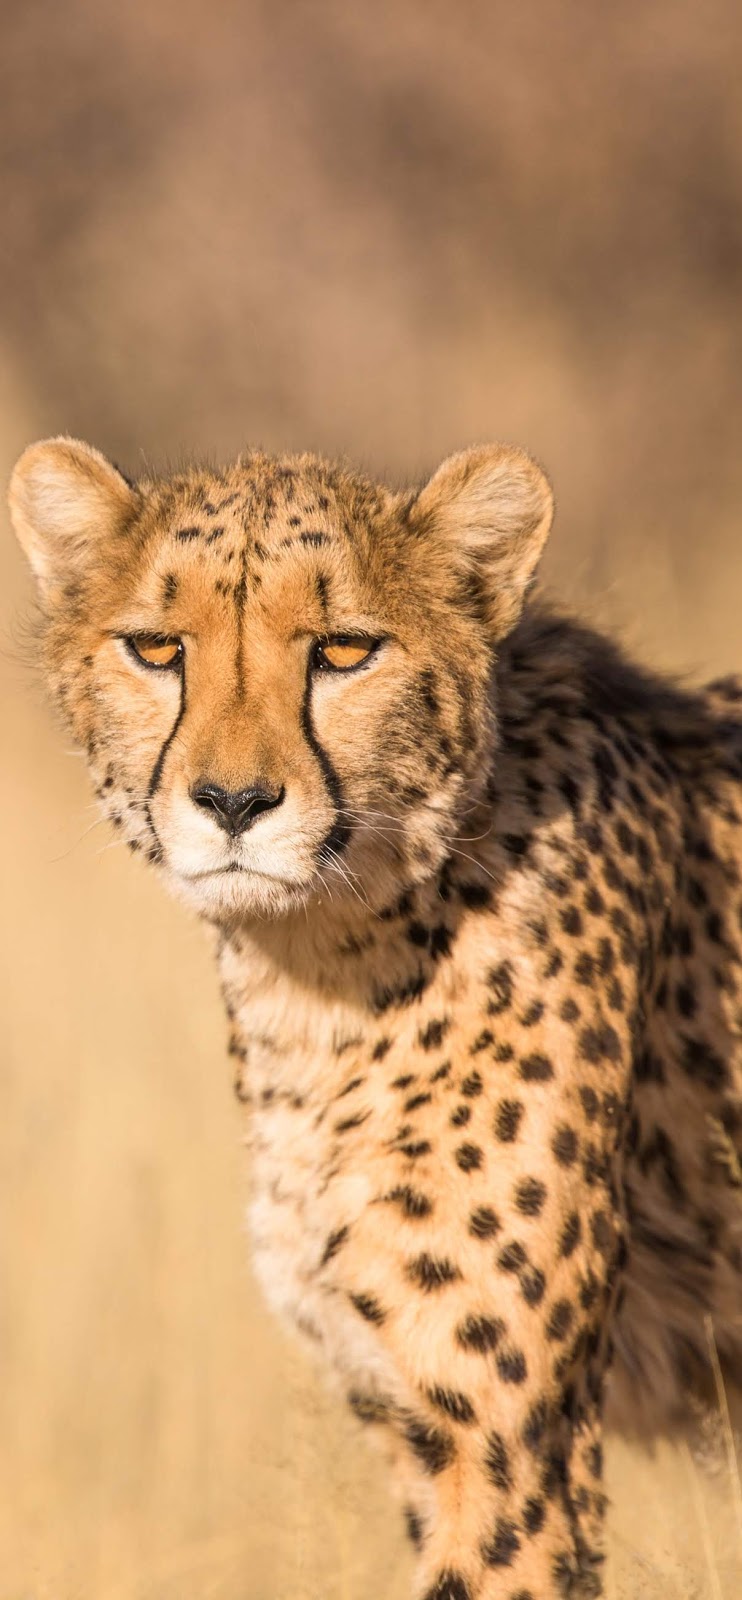 Photo of a cheetah.